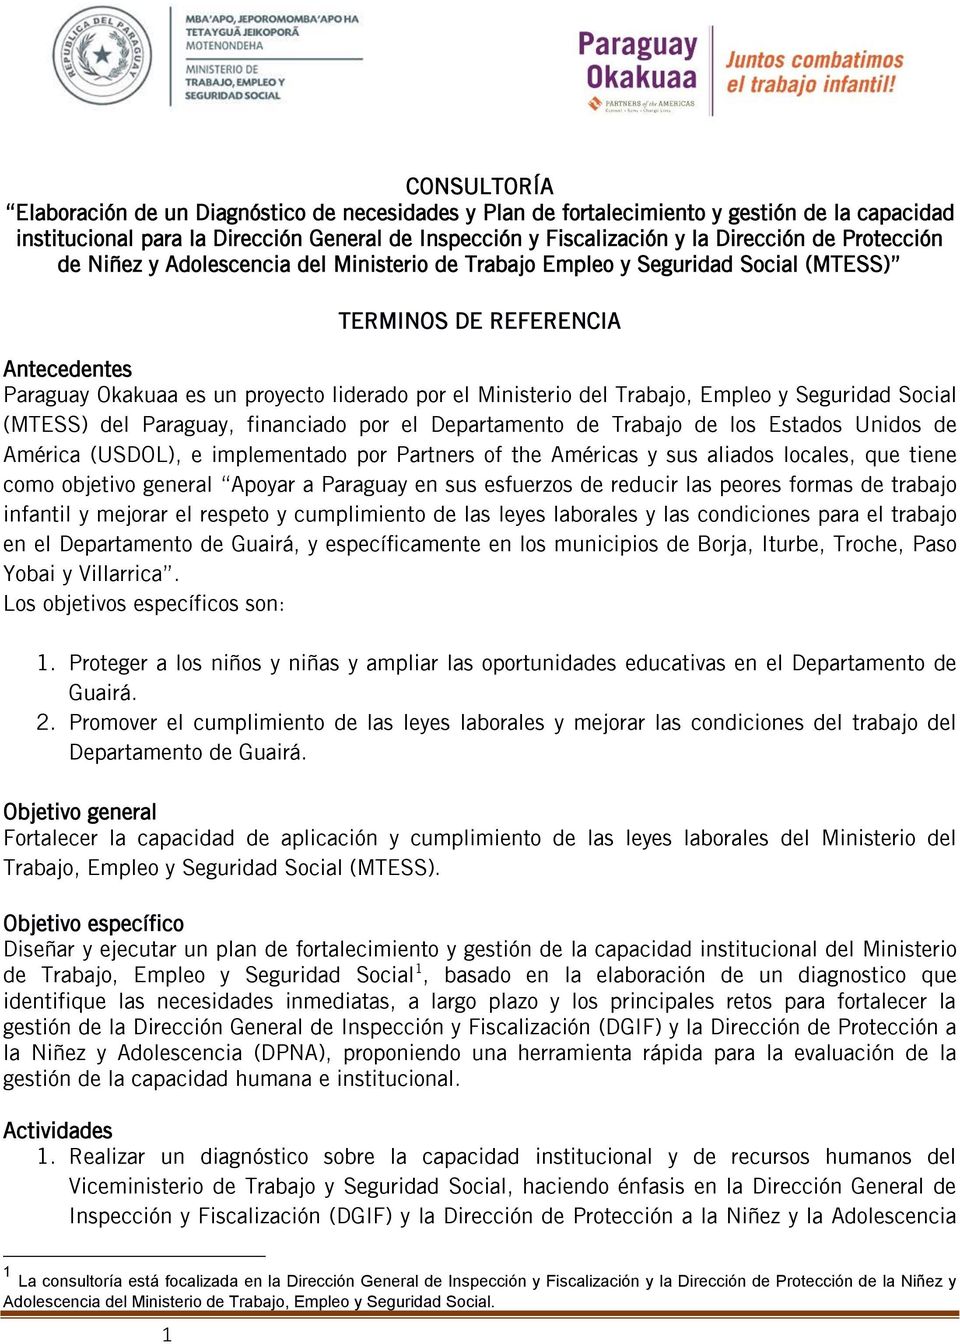 Trabajo, Empleo y Seguridad Social (MTESS) del Paraguay, financiado por el Departamento de Trabajo de los Estados Unidos de América (USDOL), e implementado por Partners of the Américas y sus aliados